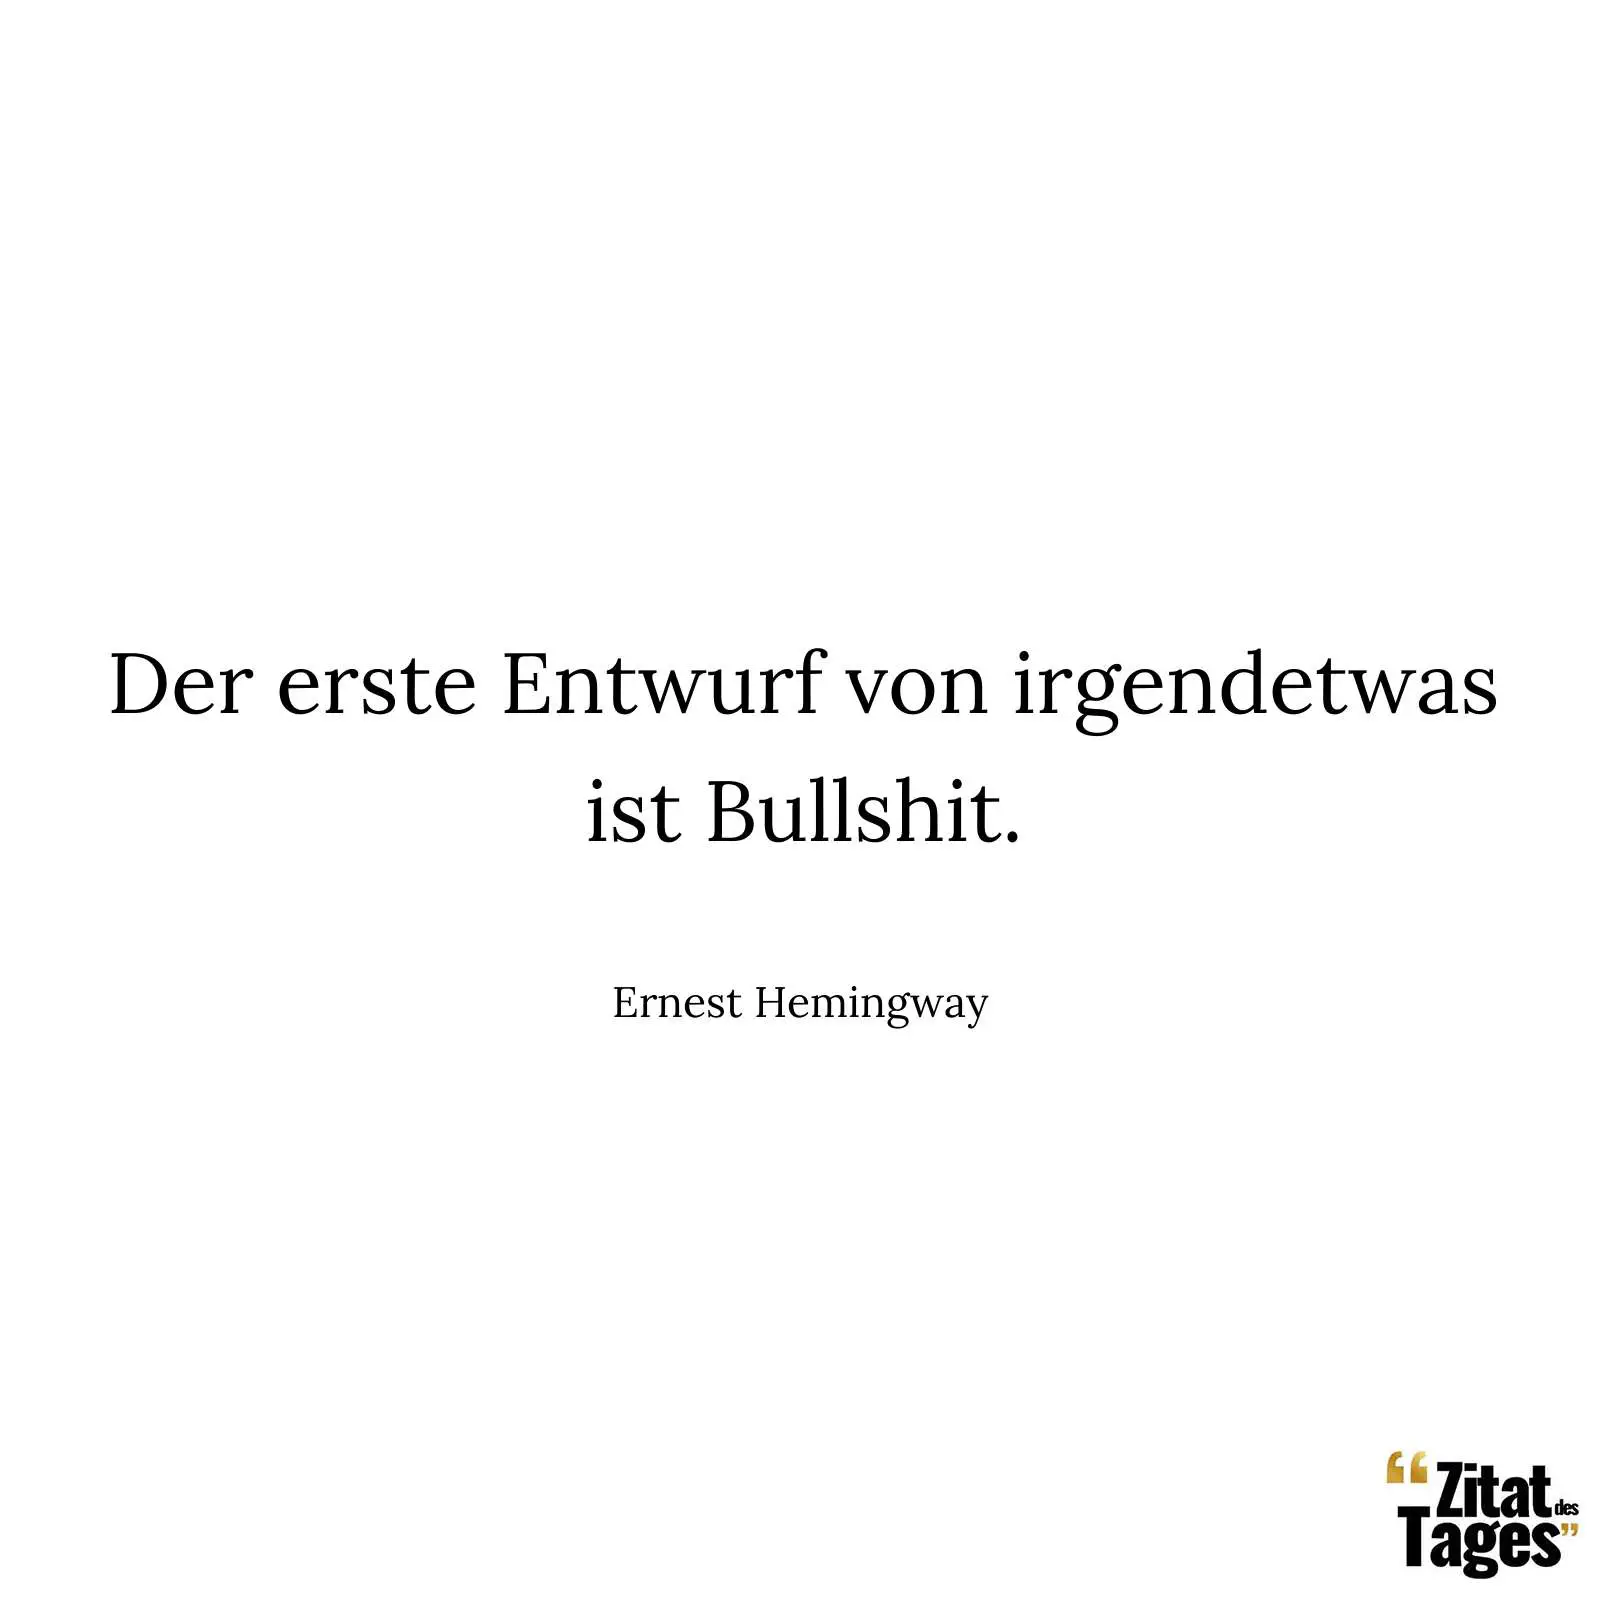 Der erste Entwurf von irgendetwas ist Bullshit. - Ernest Hemingway